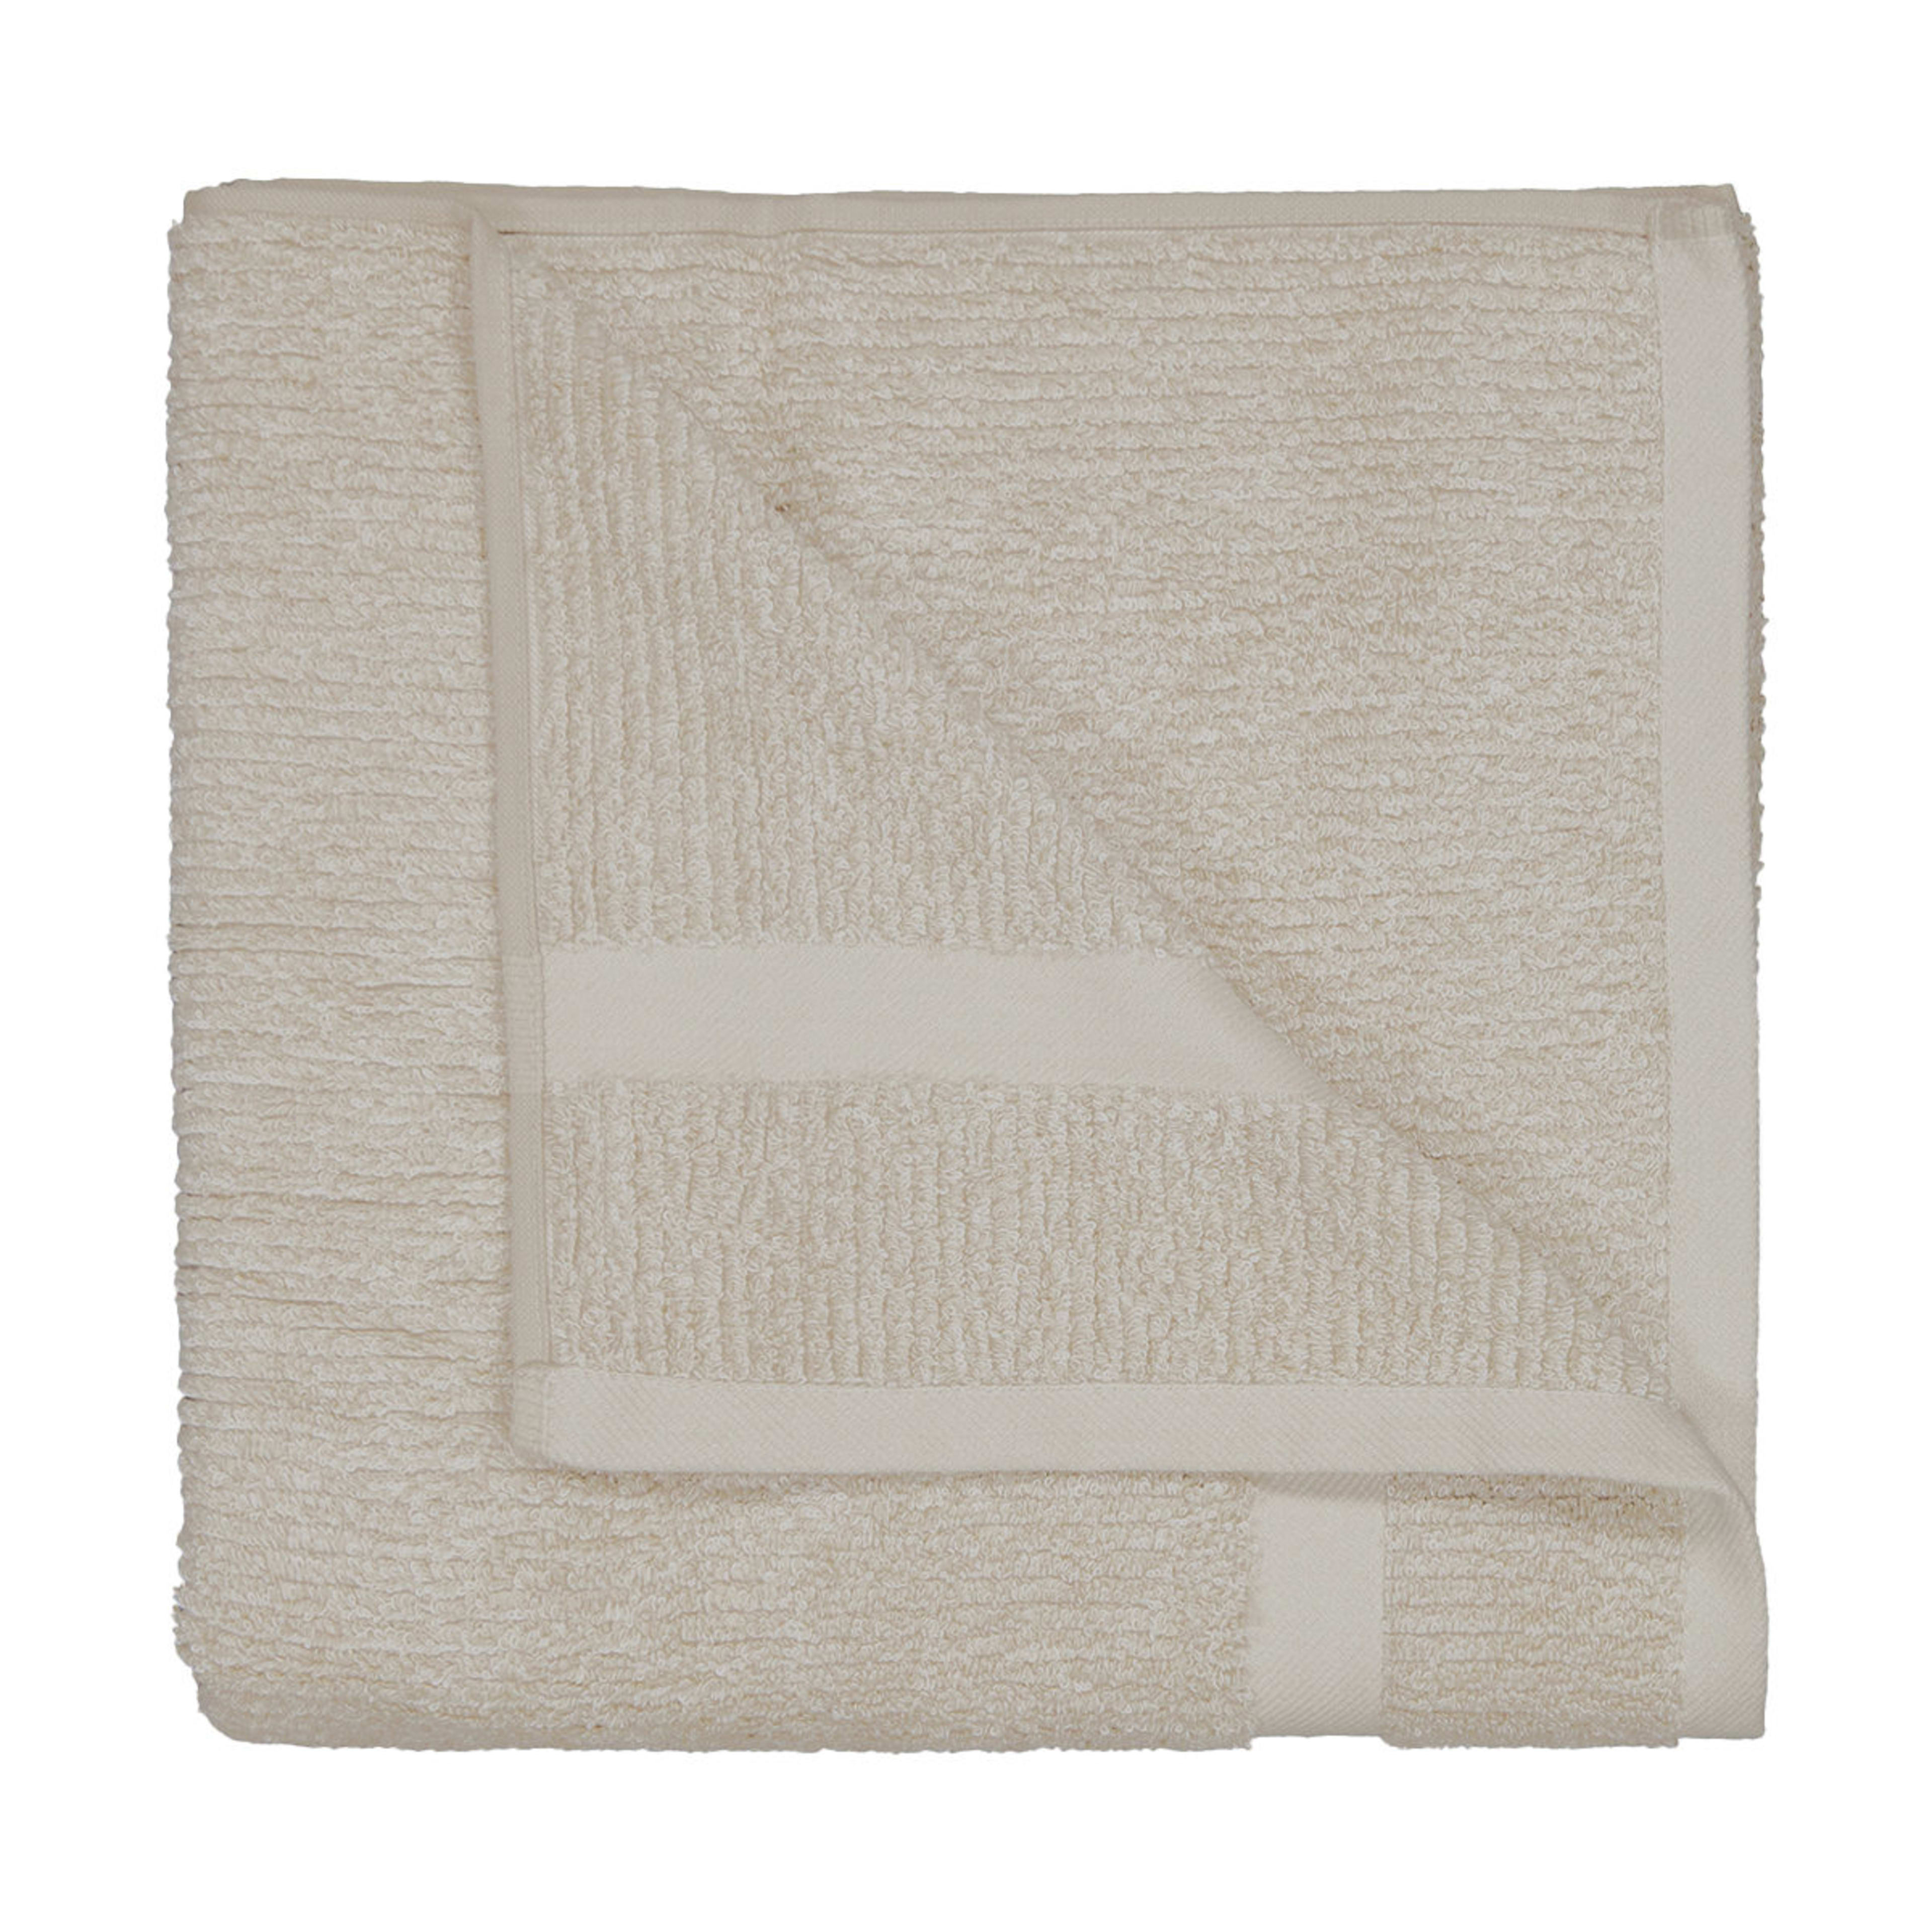 Austin Cotton Bath Towel - Natural - Kmart